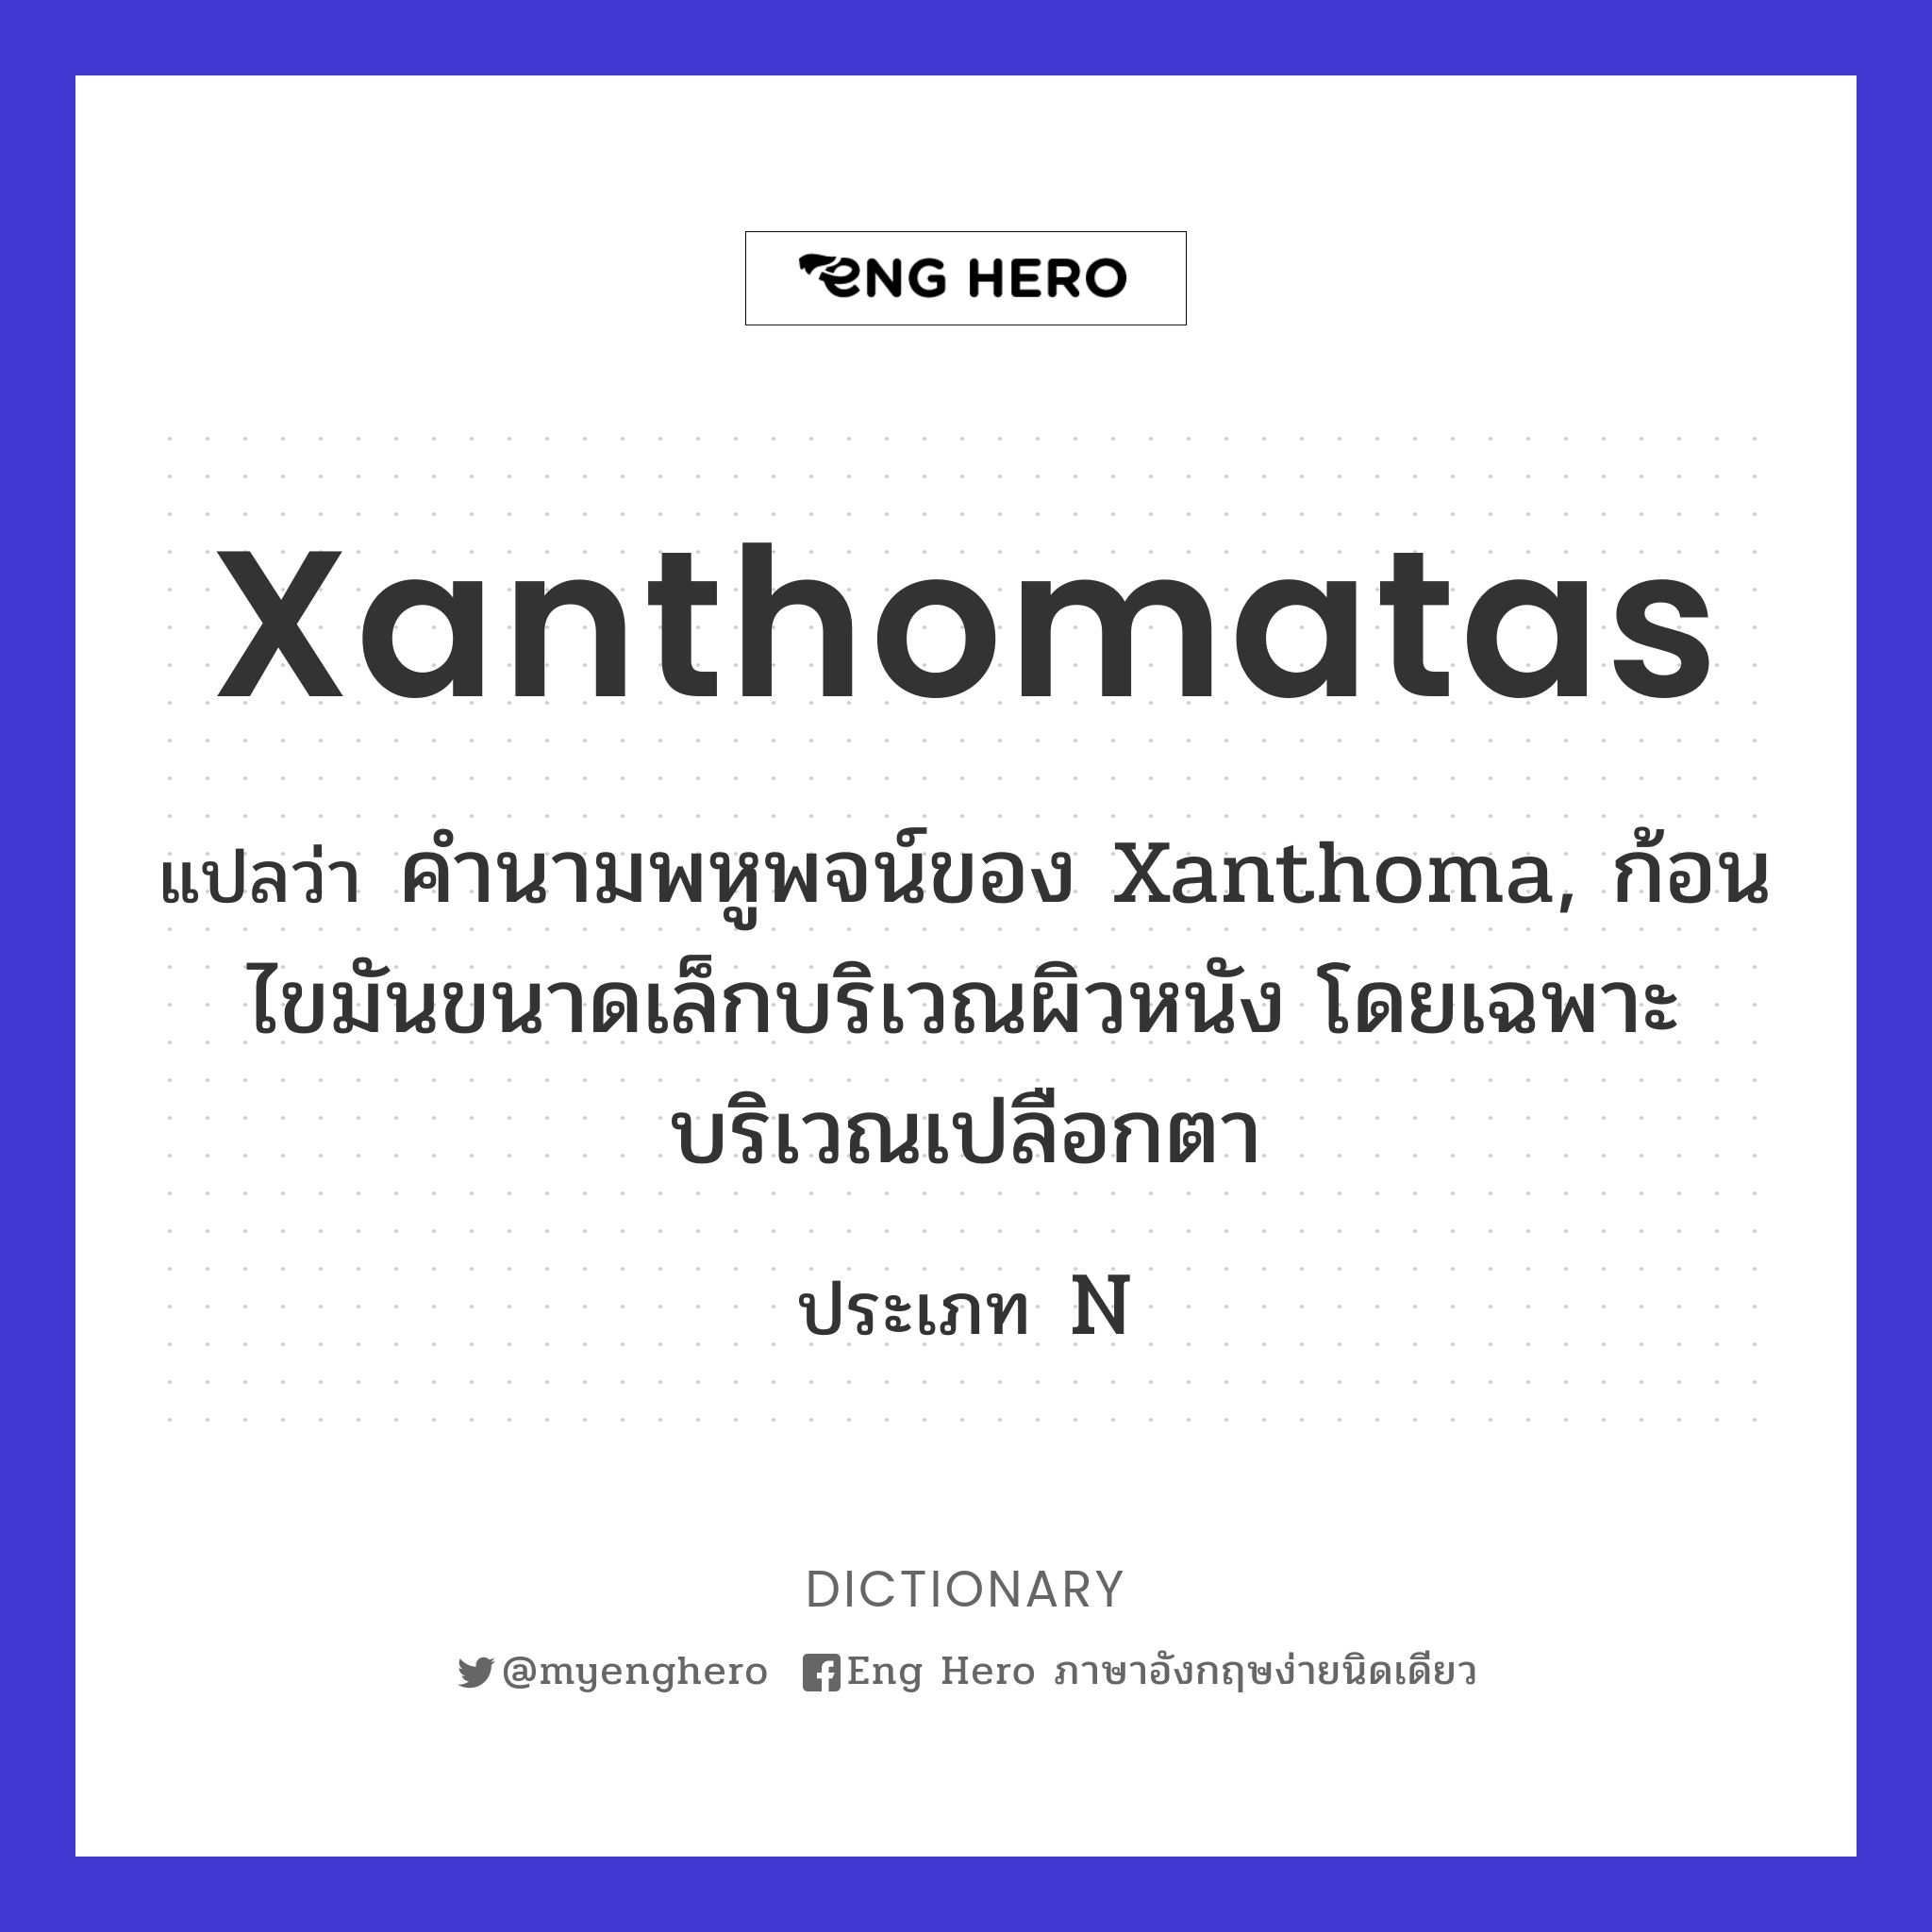 xanthomatas